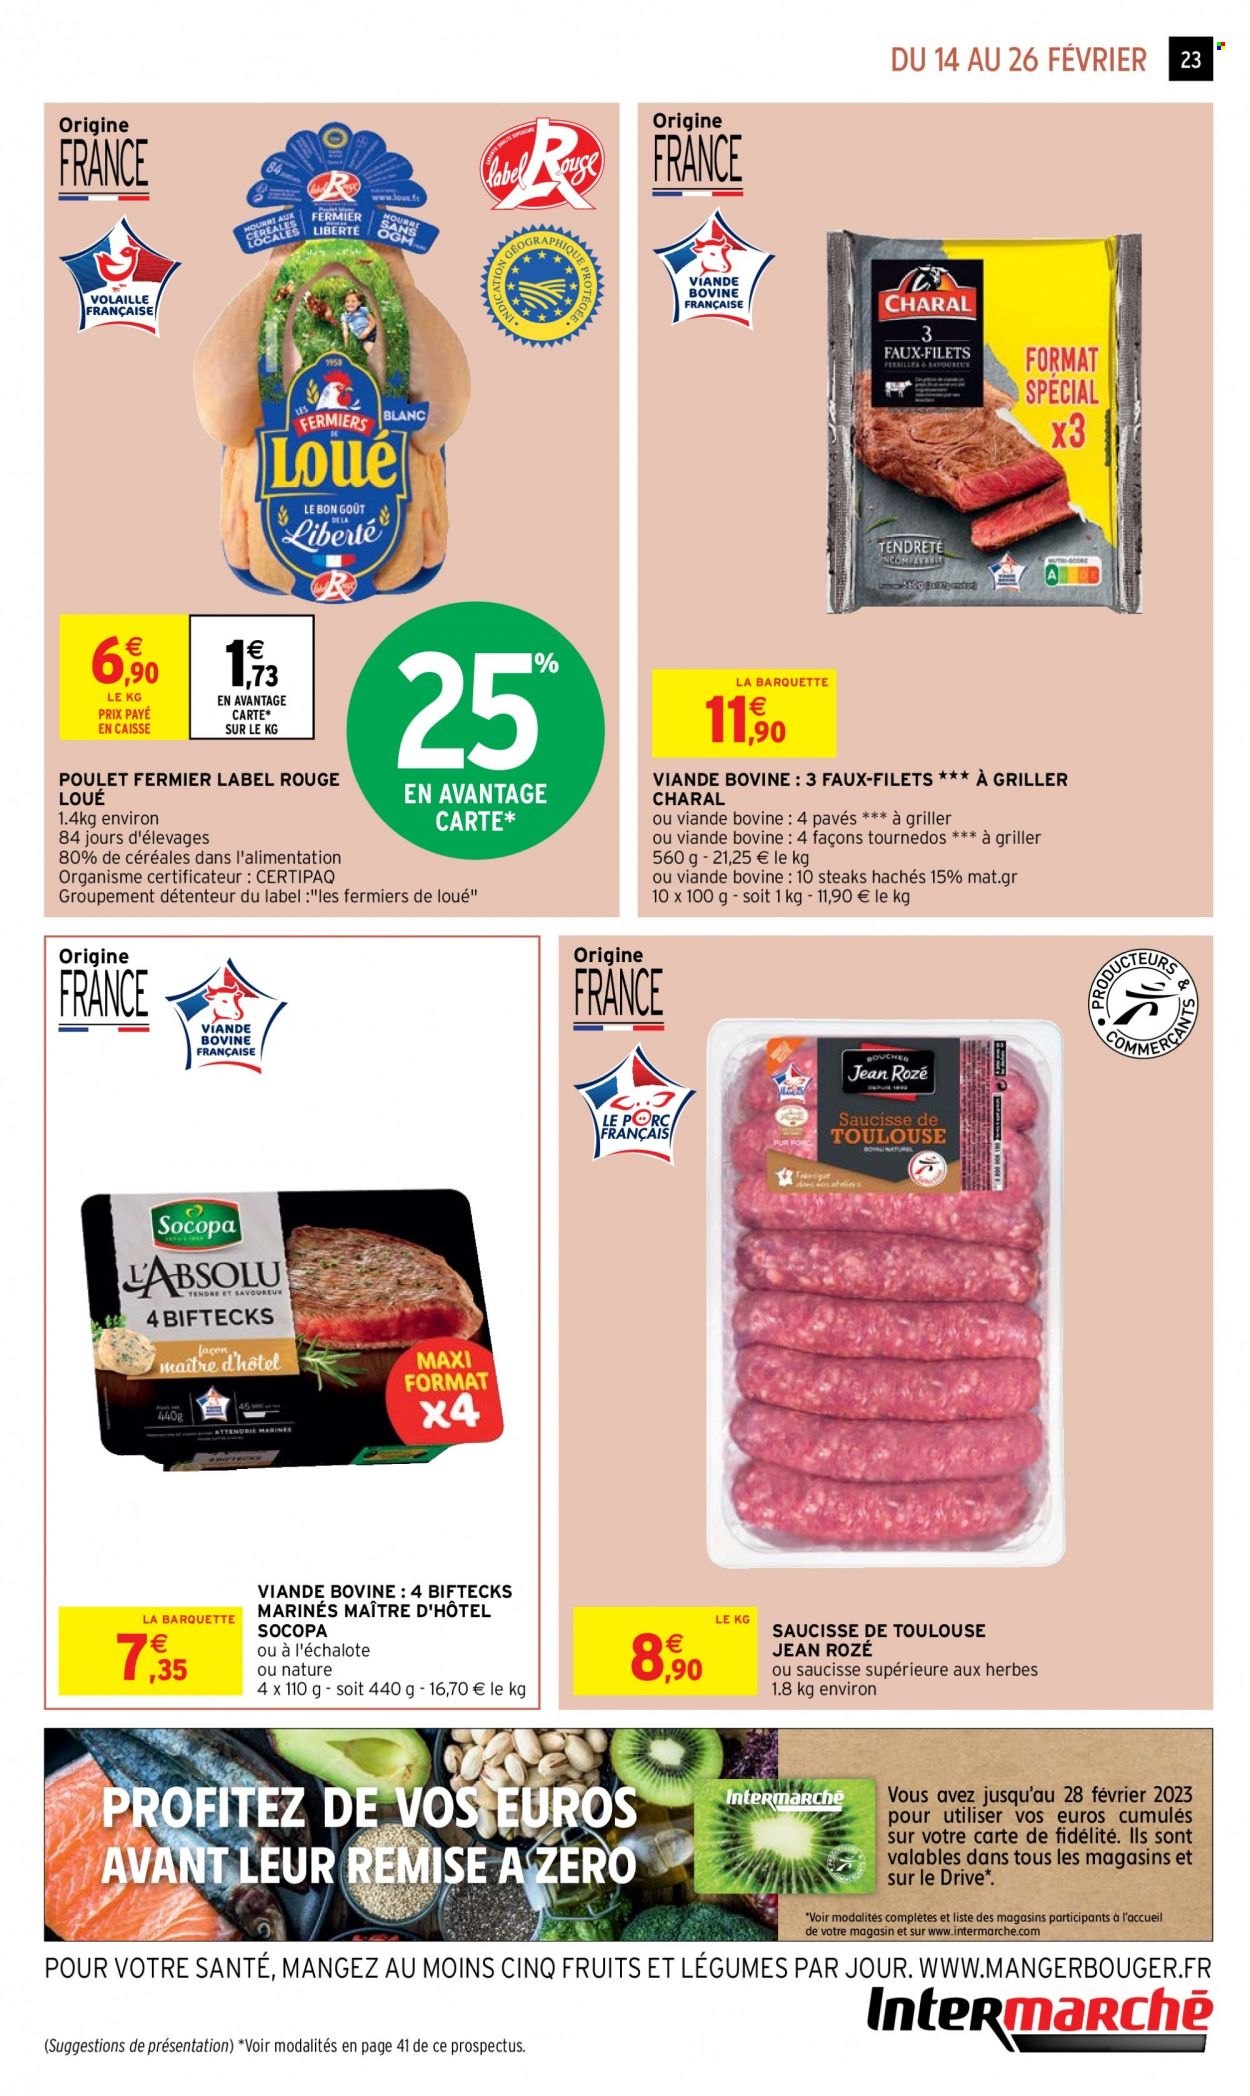 thumbnail - Catalogue Intermarché Hyper - 14/02/2023 - 26/02/2023 - Produits soldés - poulet, viande de poulet, steak haché, viande hachée, saucisse. Page 23.